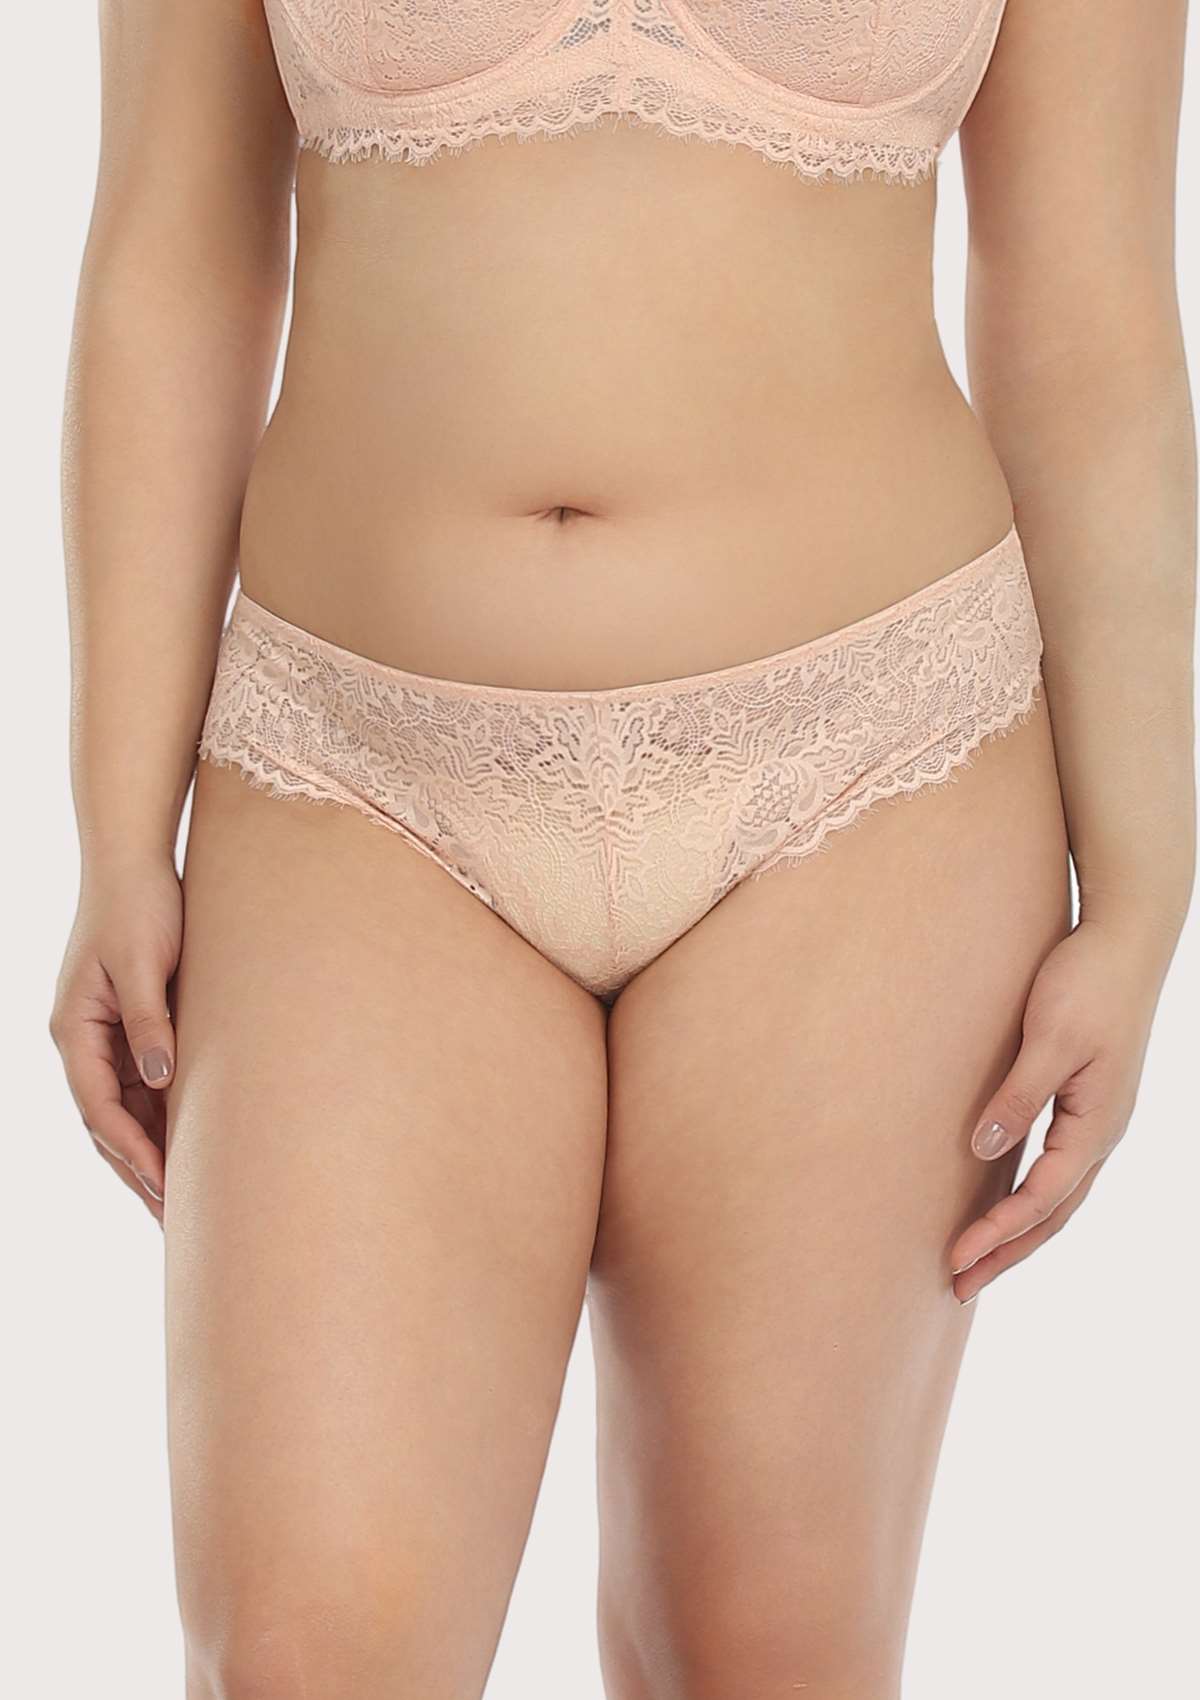 HSIA Sunflower Exquisite Lace Bikini Underwear - XXXL / Pink